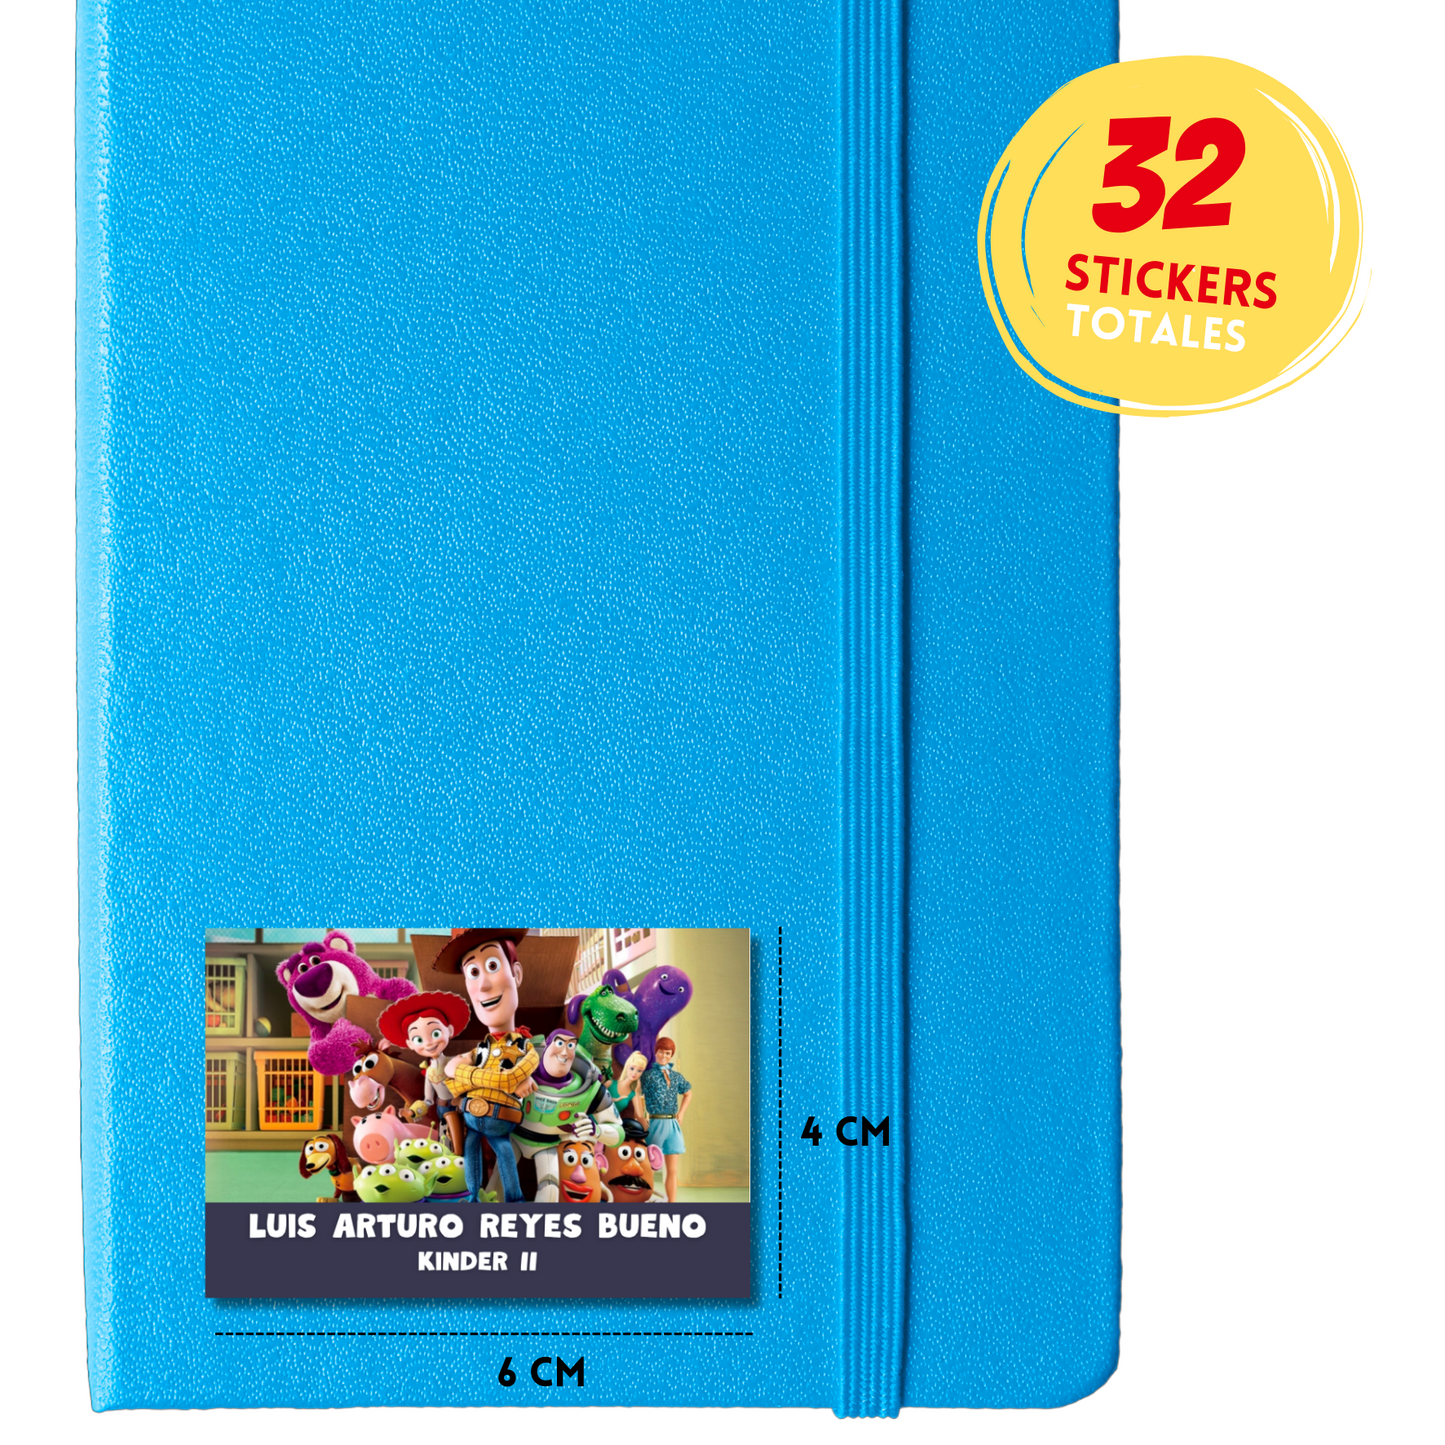 Toy Story 3 Etiquetas Escolares Personalizadas Libretas, Libros y Lápices